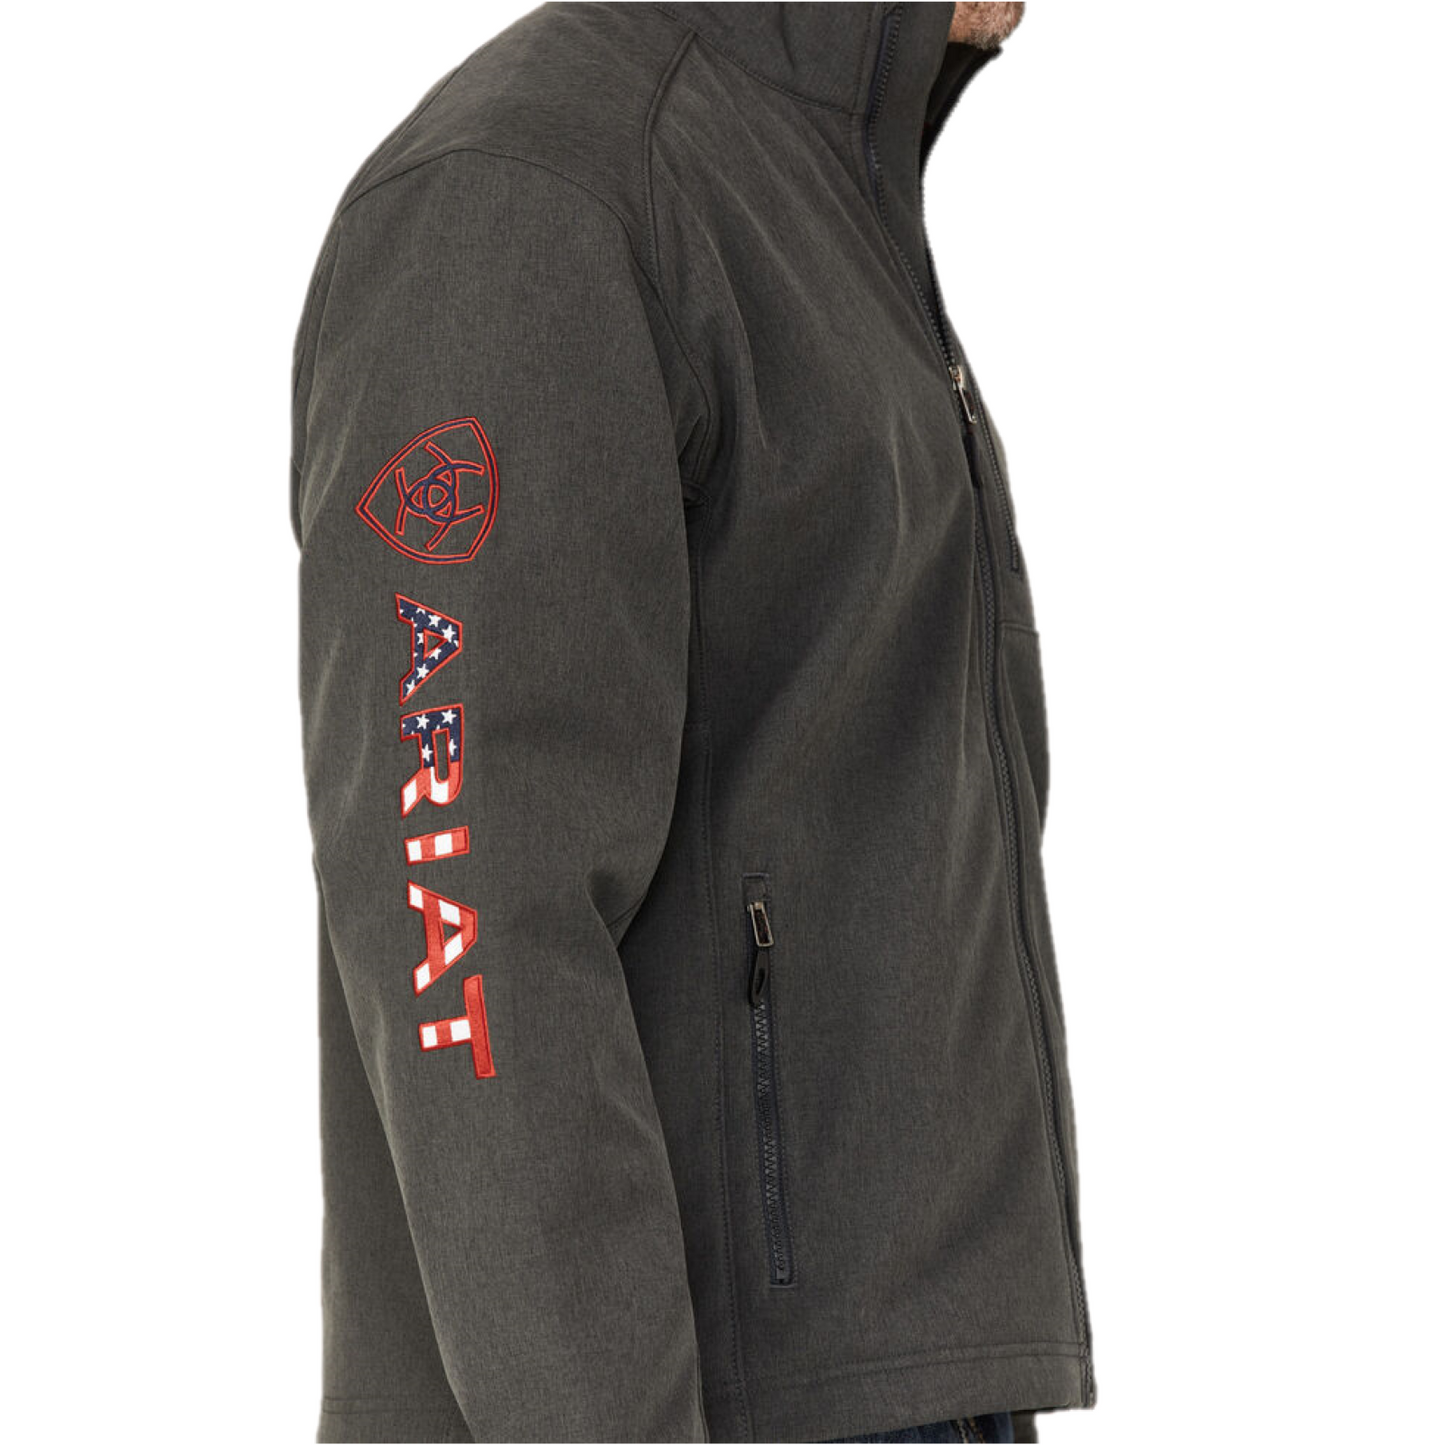 Ariat Men's Black Logo 2.0 Softshell Jacket - Tall